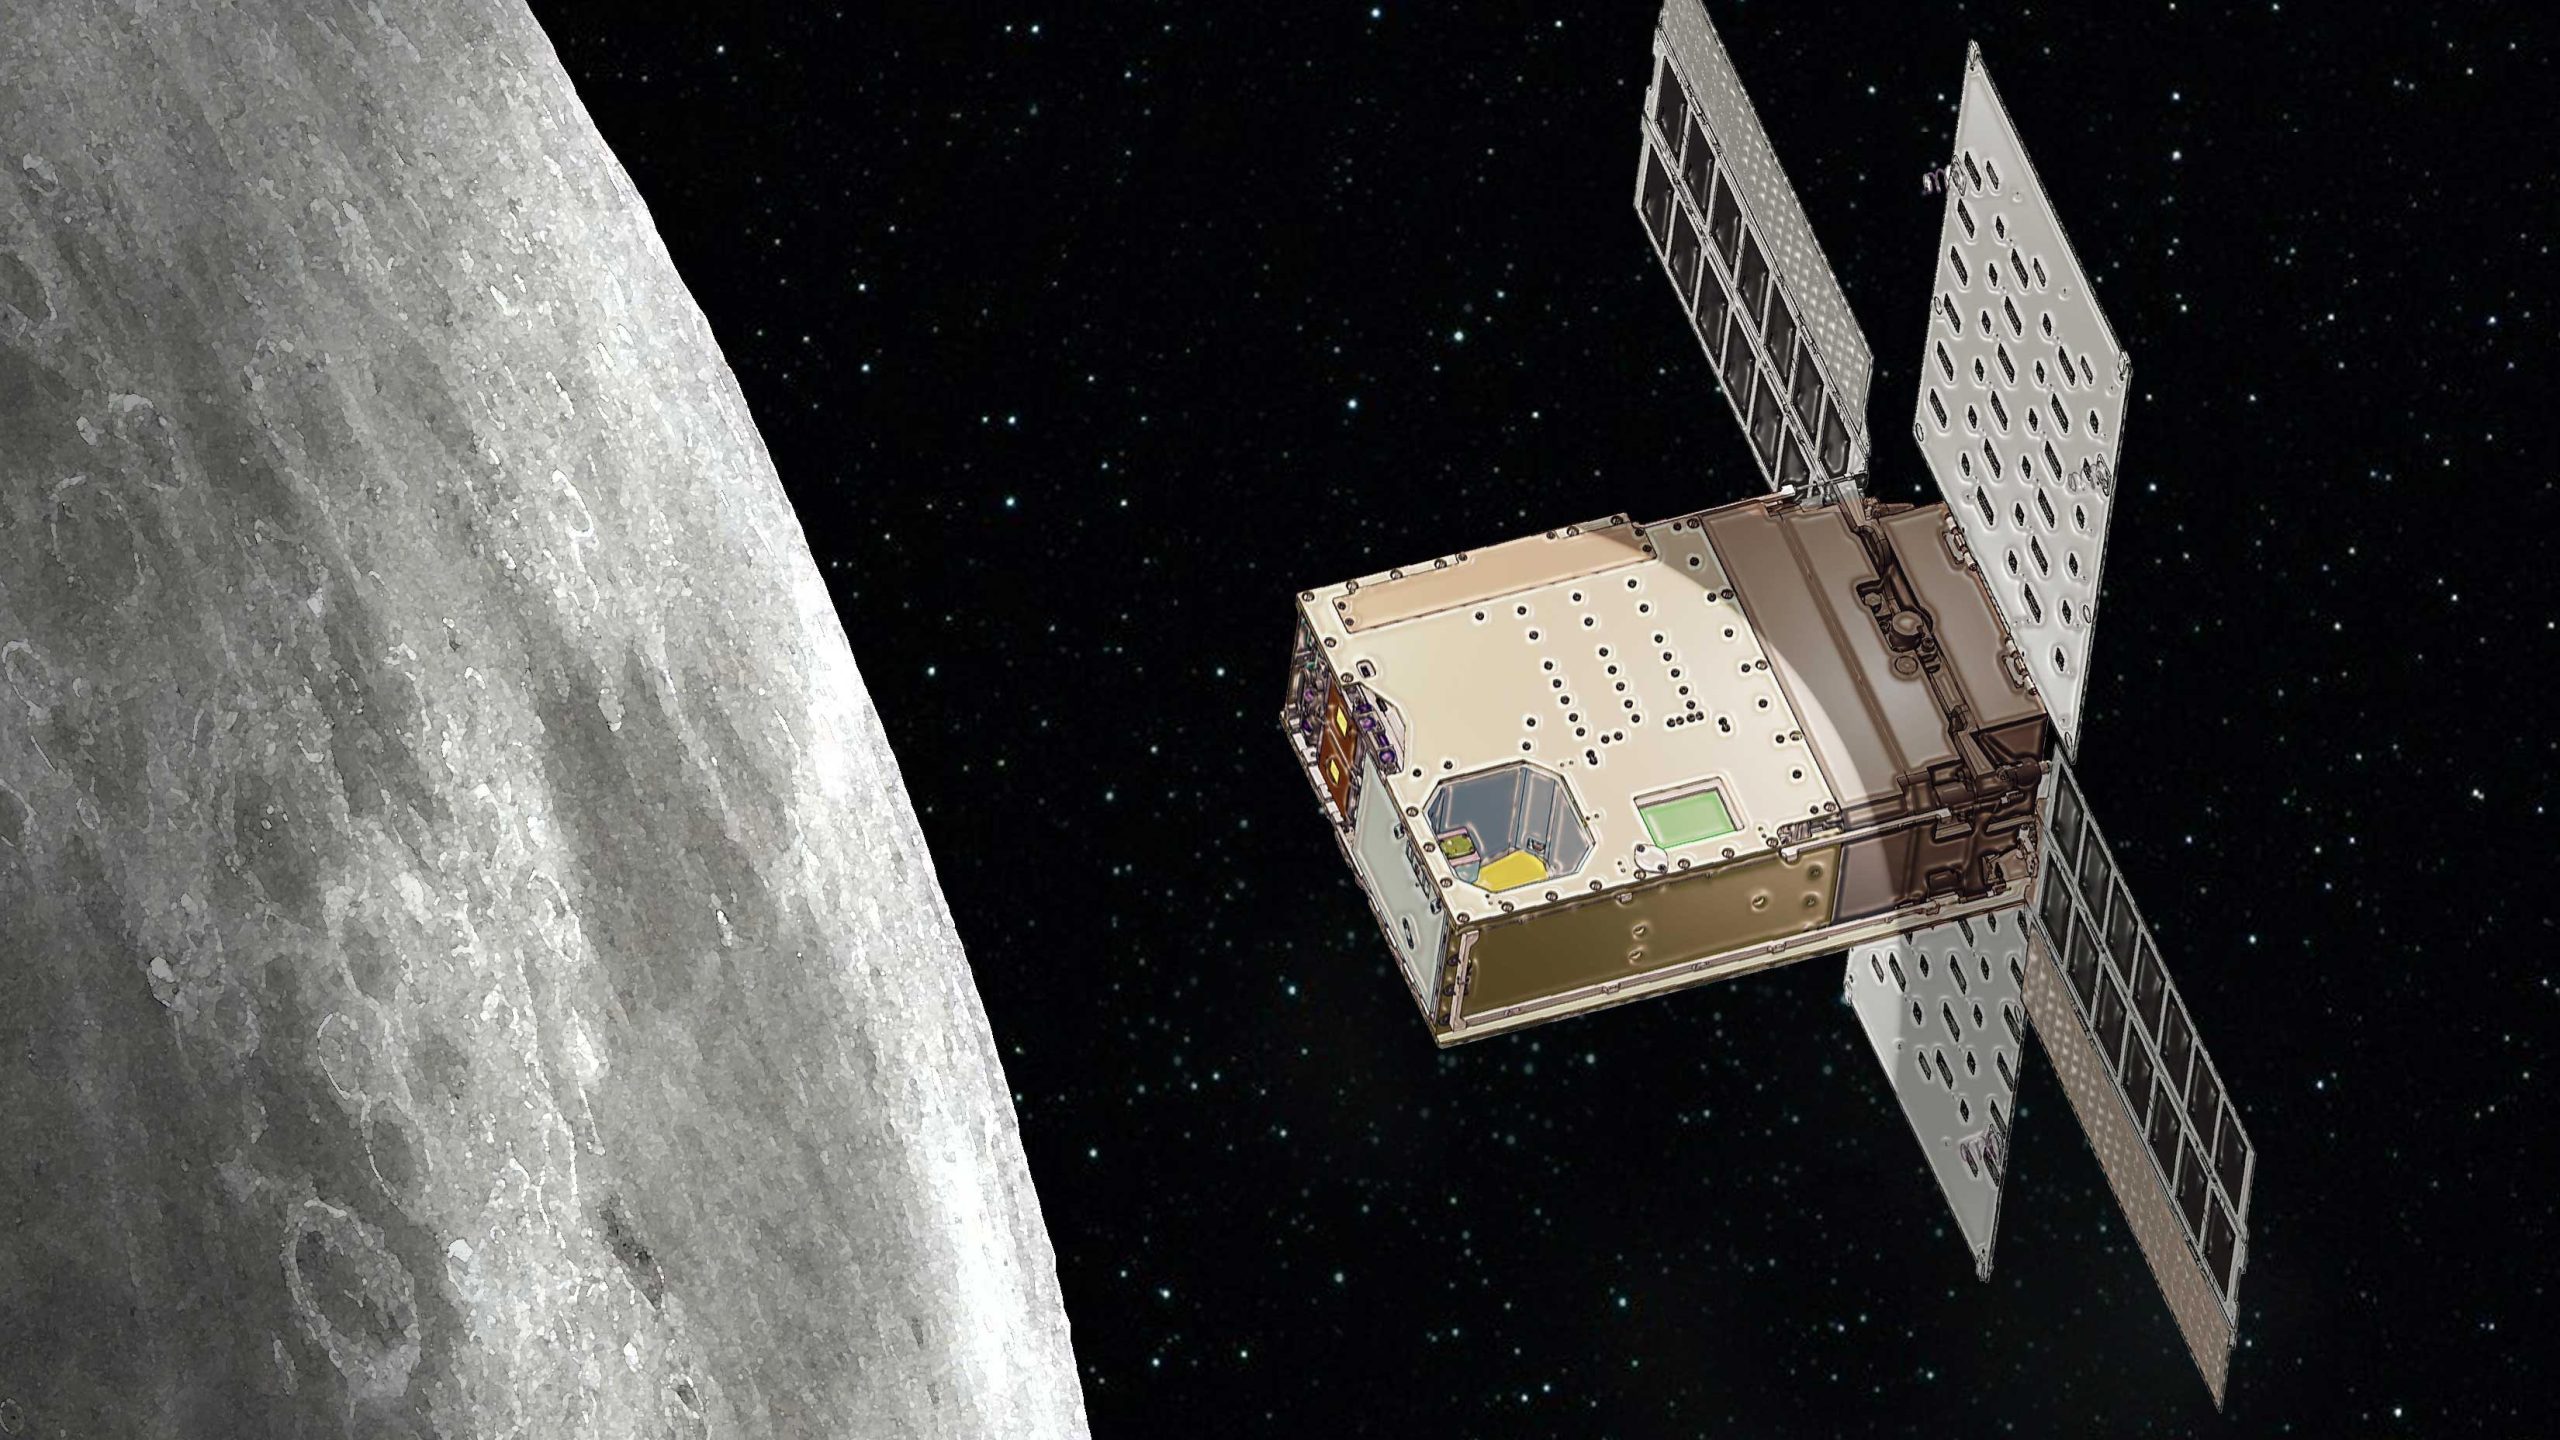 Lunar Flashlight der NASA wurde abgefeuert - Verfolgen Sie die Mission zum Mond in Echtzeit